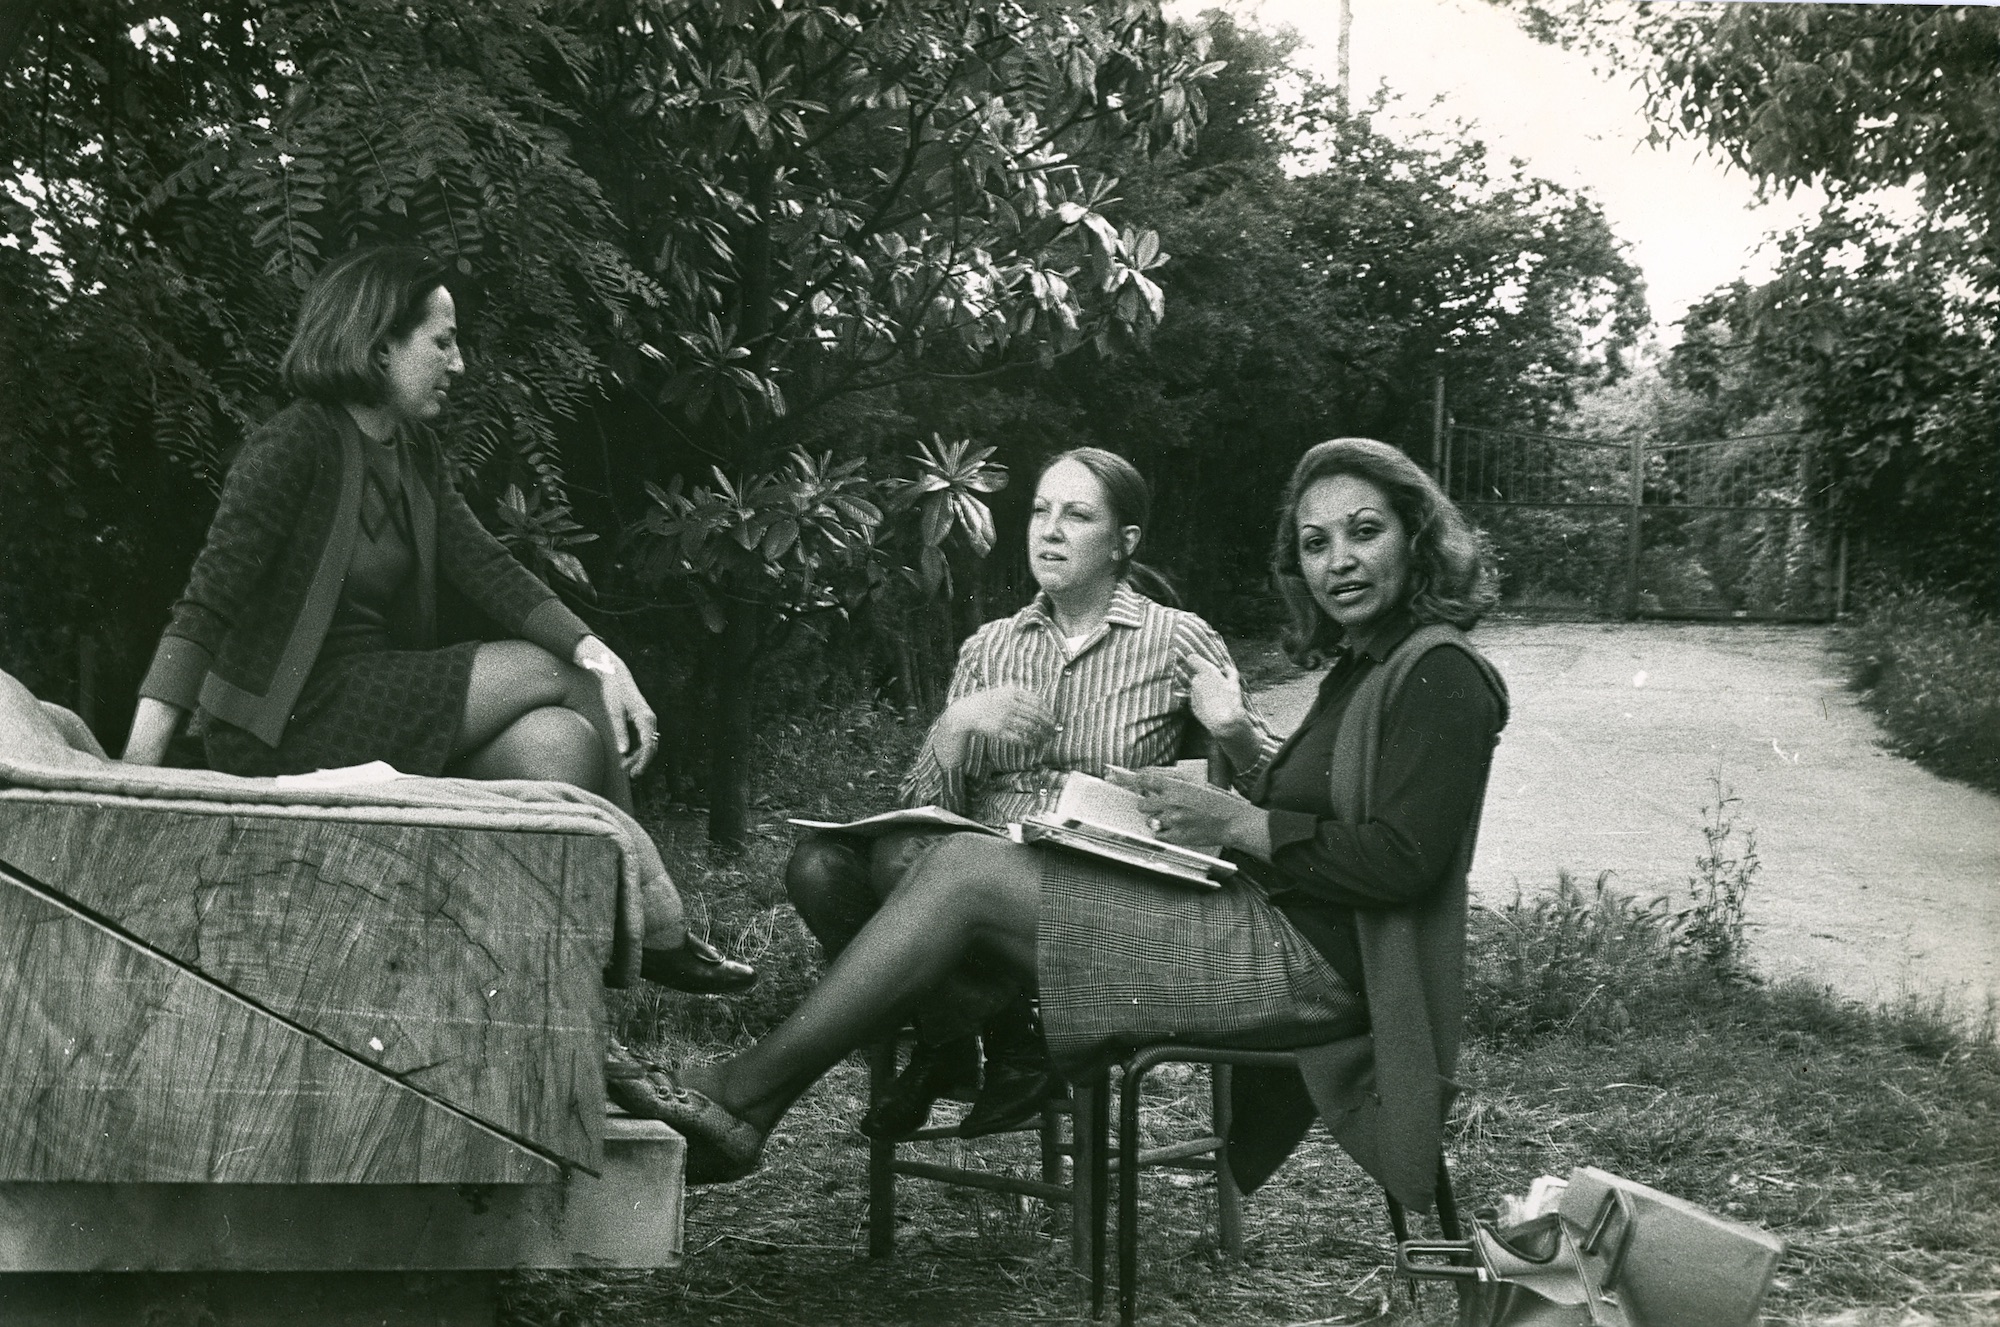 Carla Accardi, Carla Lonzi and Elvira Banotti in Rome in 1970, photo taken by Pietro Consagra © Archivio Pietro Consagra, Milano